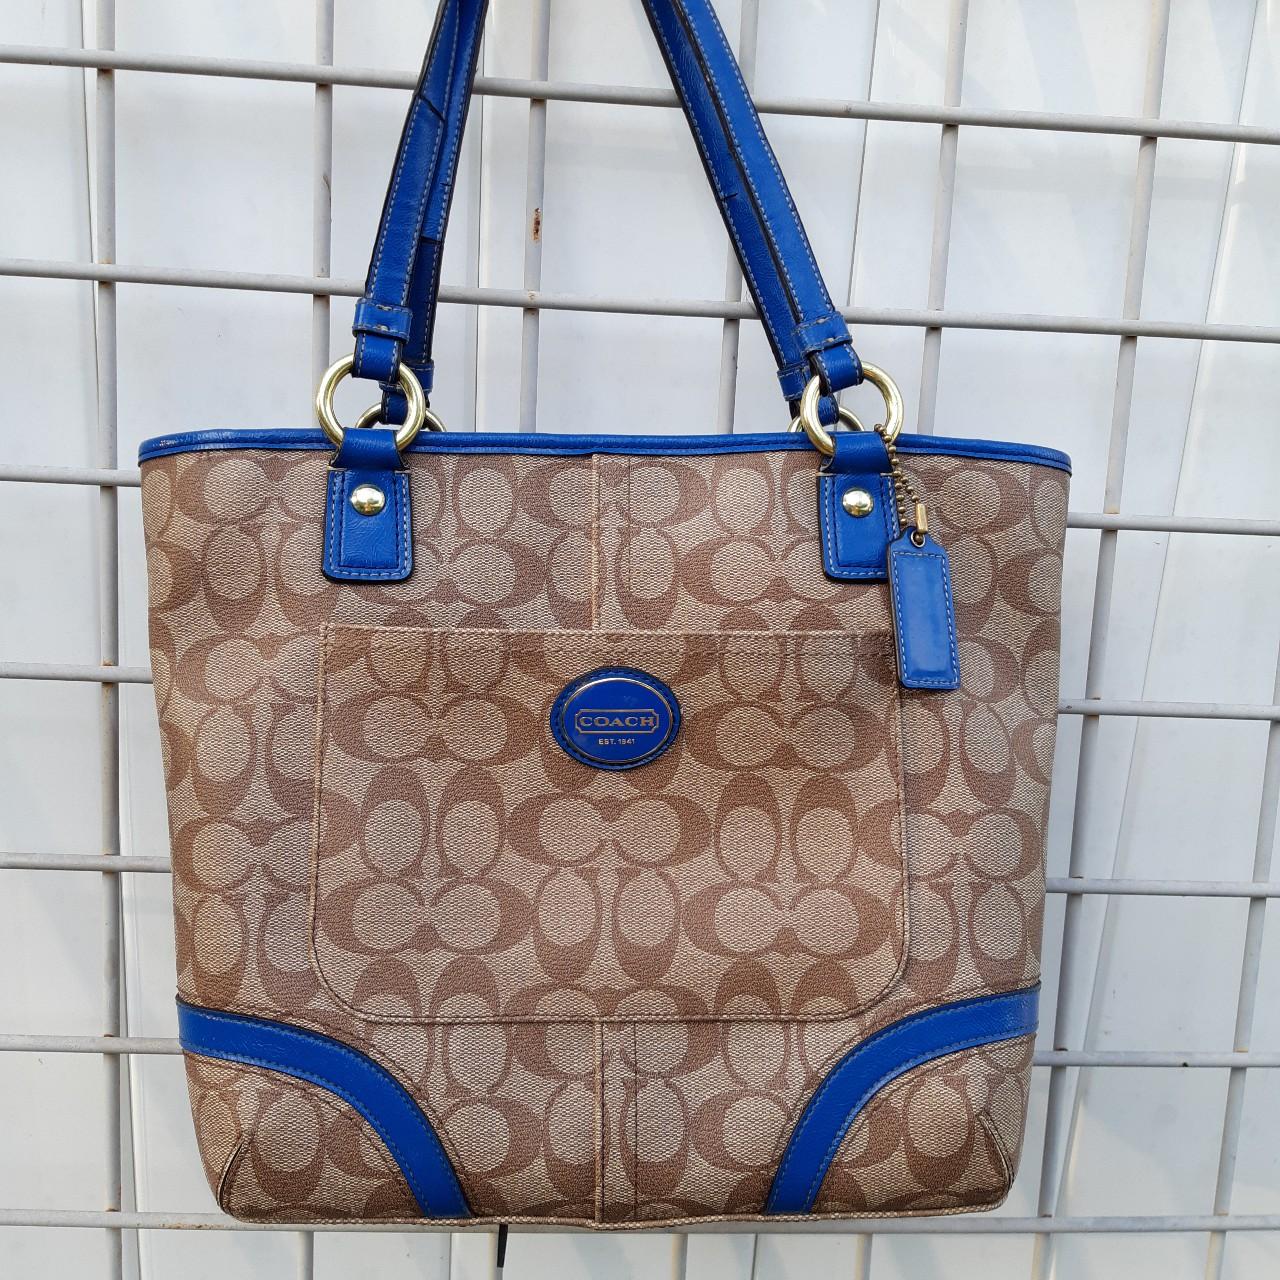 Coach Poppy Patent Leather Handbag Navy Blue | eBay